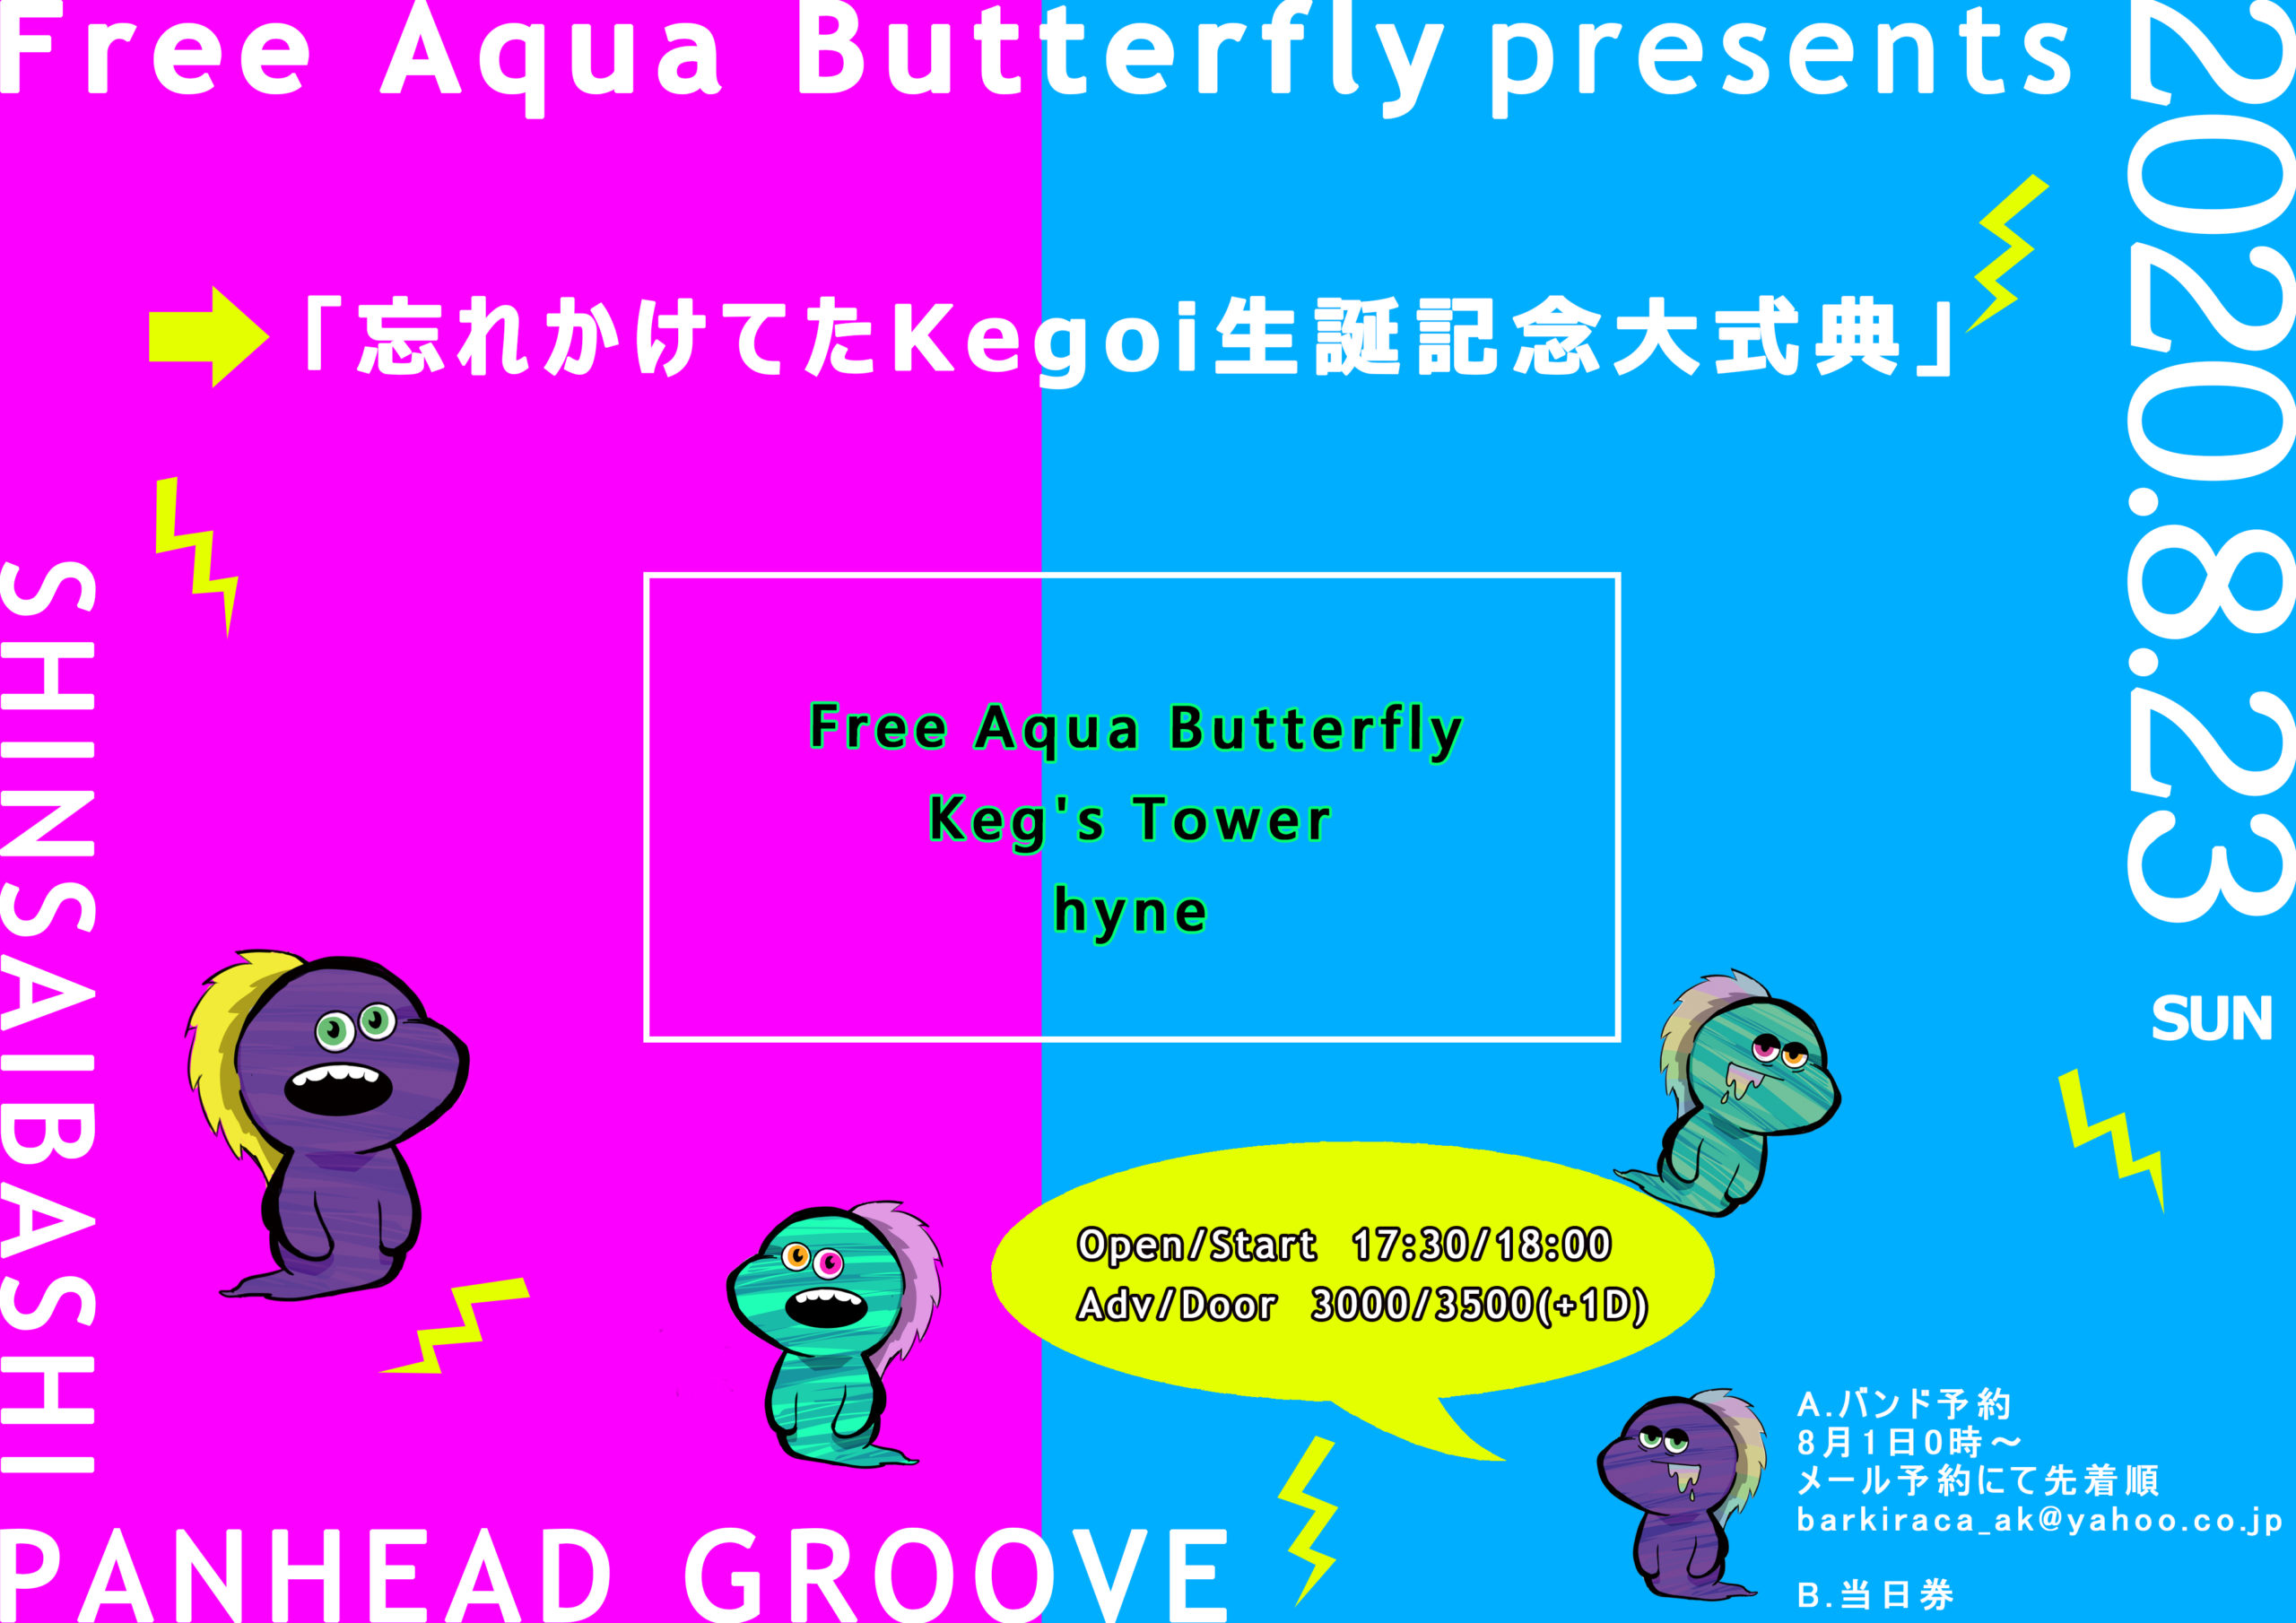 Free Aqua Butterfly presents 「忘れかけてたKegoi生誕記念大式典」